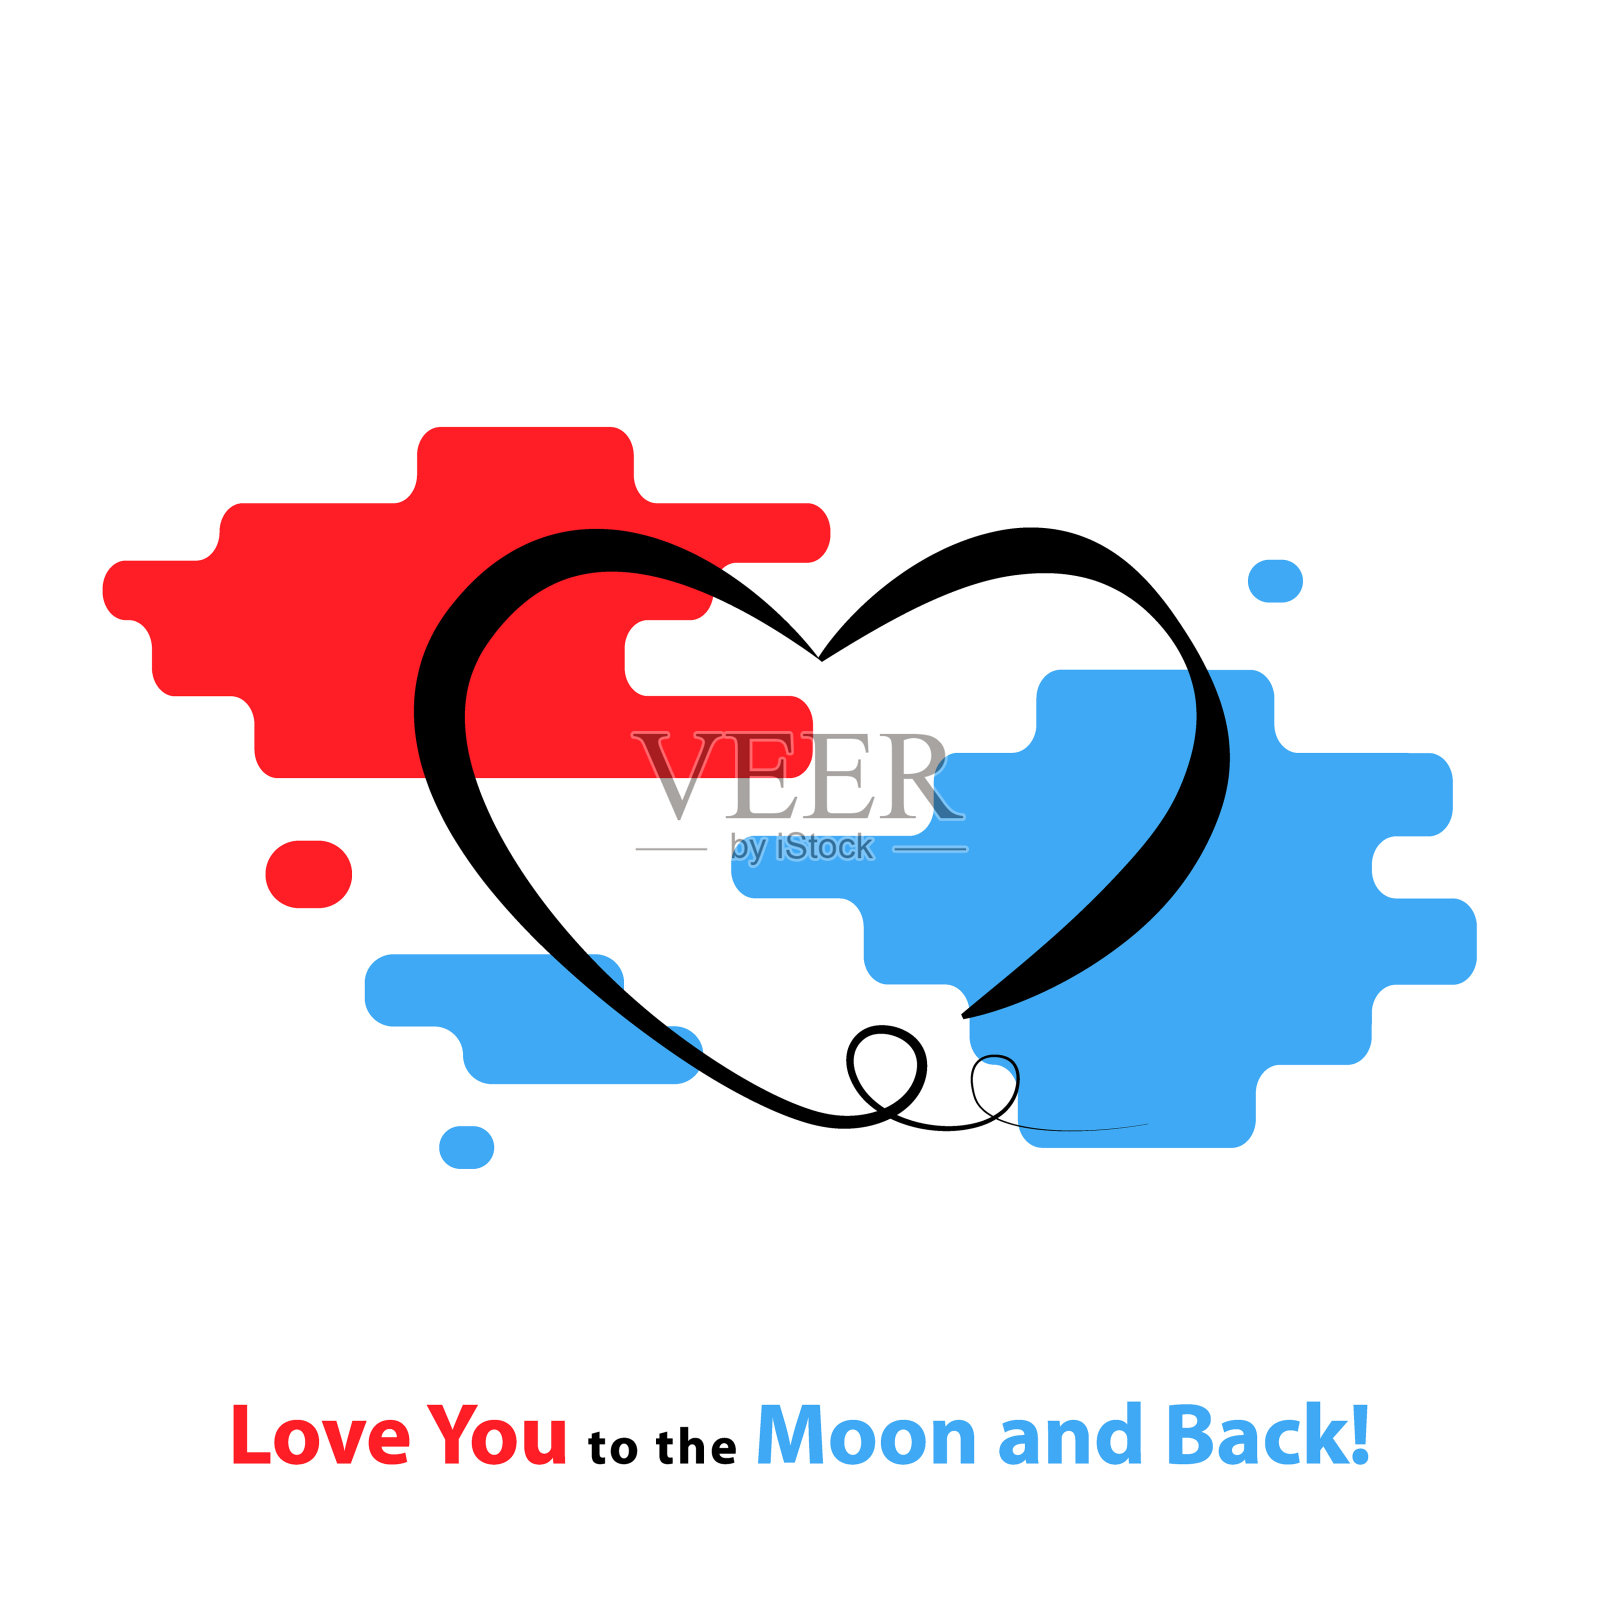 我爱你到月球和背部。手绘制的海报与壮观图片免费下载-5025494812-千图网Pro